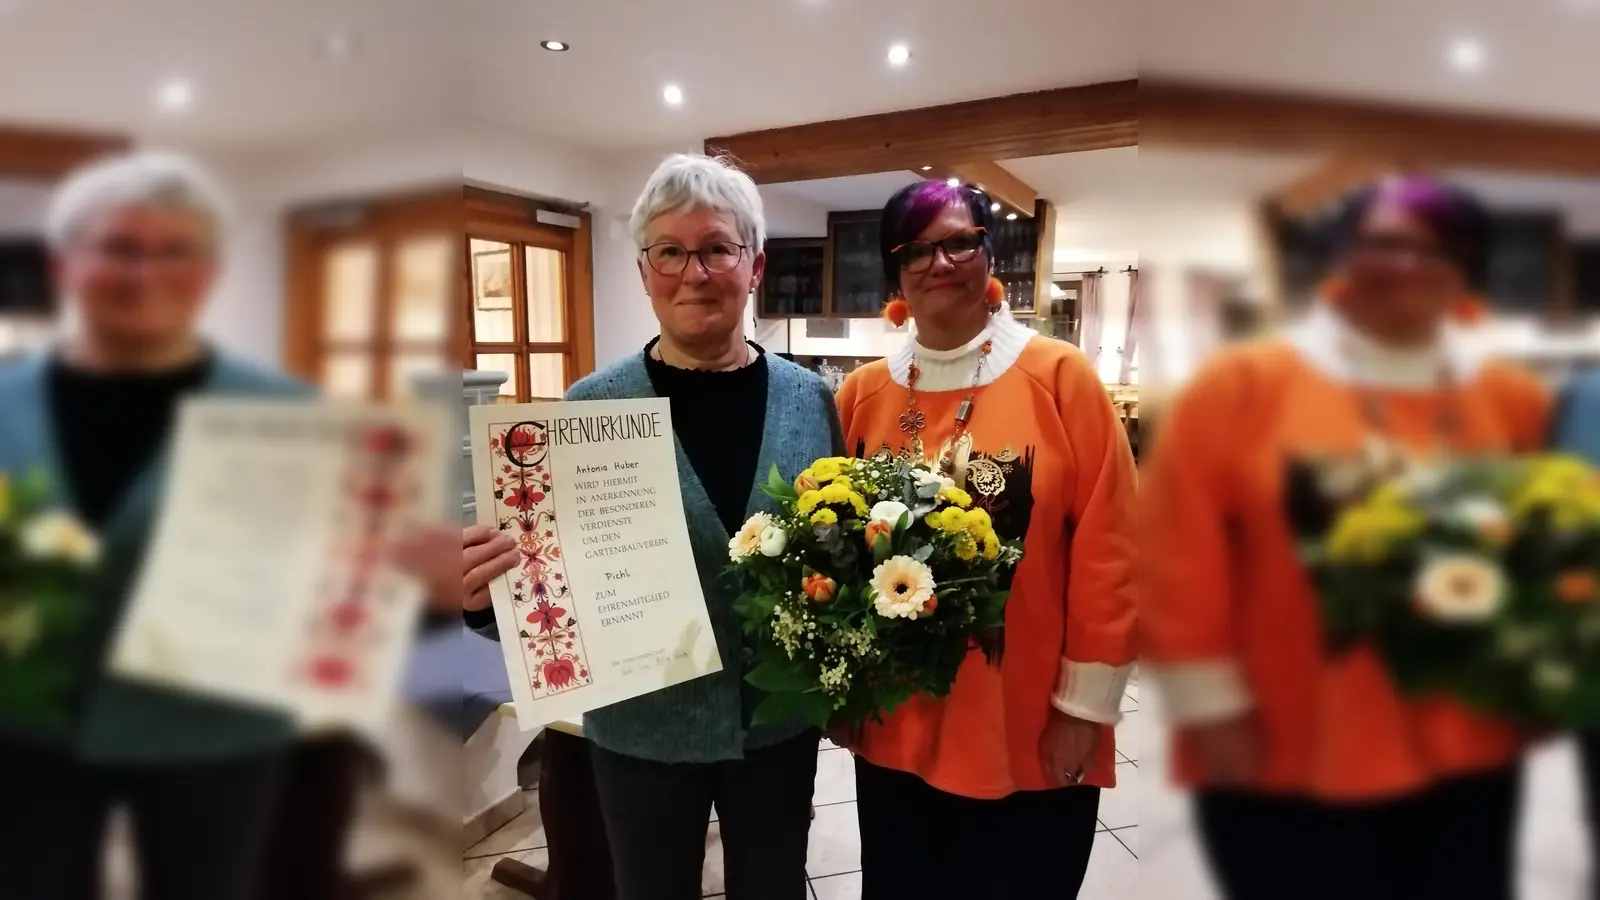 <b>Zum Ehrenmitglied</b> wurde Antonie Huber beim Obst- und Gartenbauverein Pichl ernannt. Sie setzt sich seit vielen jahren für den verein ein. Vorstand Sonja Fischer (rechts) gratulierte.  (Foto: Josef Kigle)